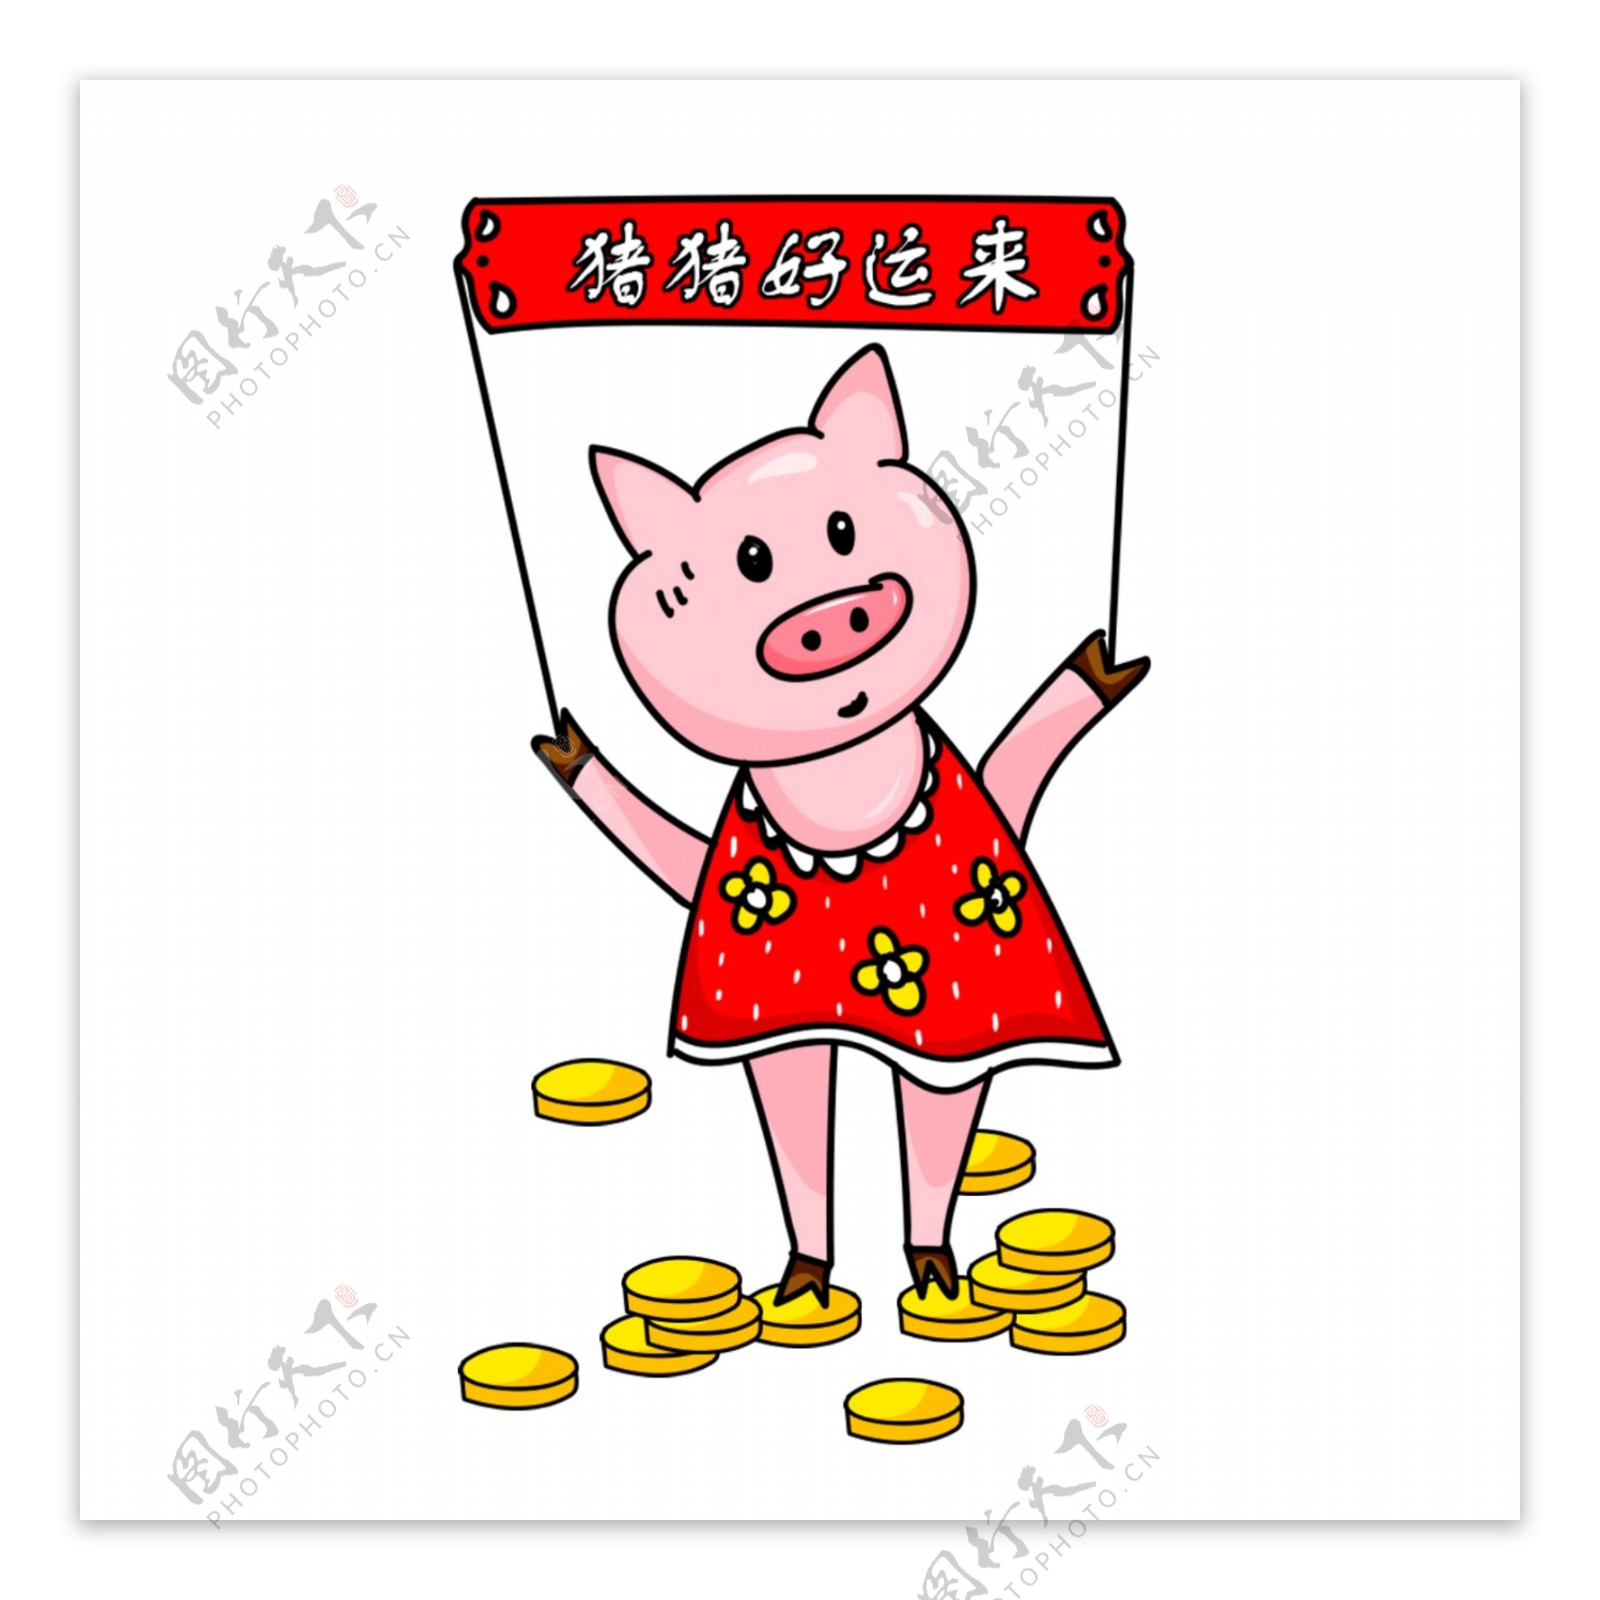 2019年猪年卡通动物猪形象可商用元素